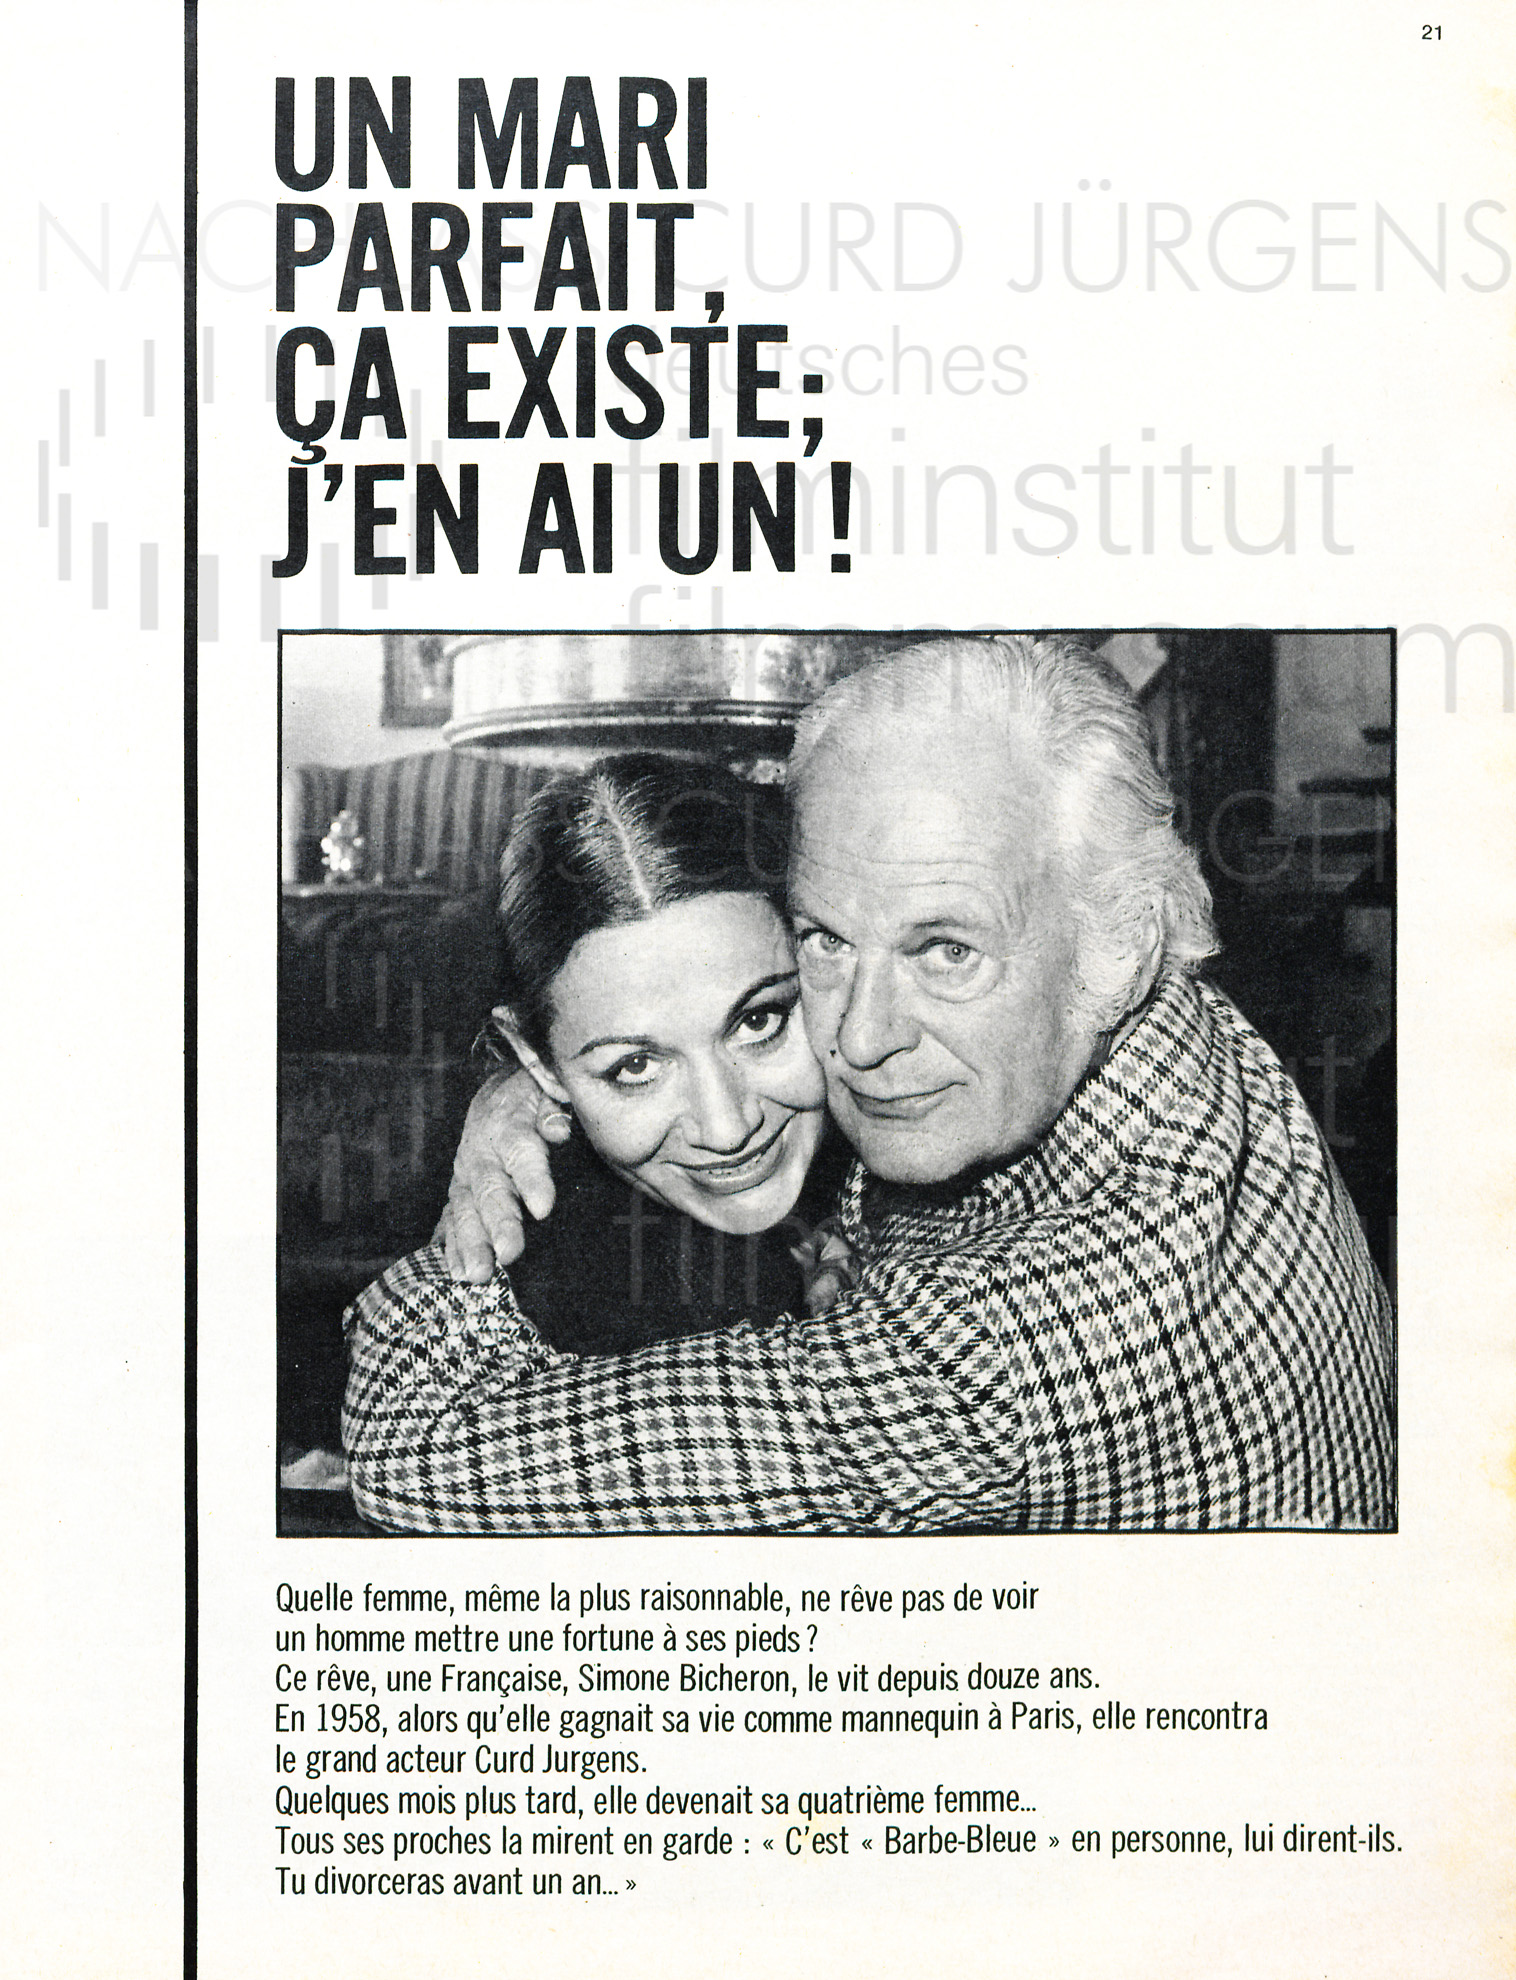 Le Soir: "Un marie parfait, ça existe; j'en ai un!", 1971